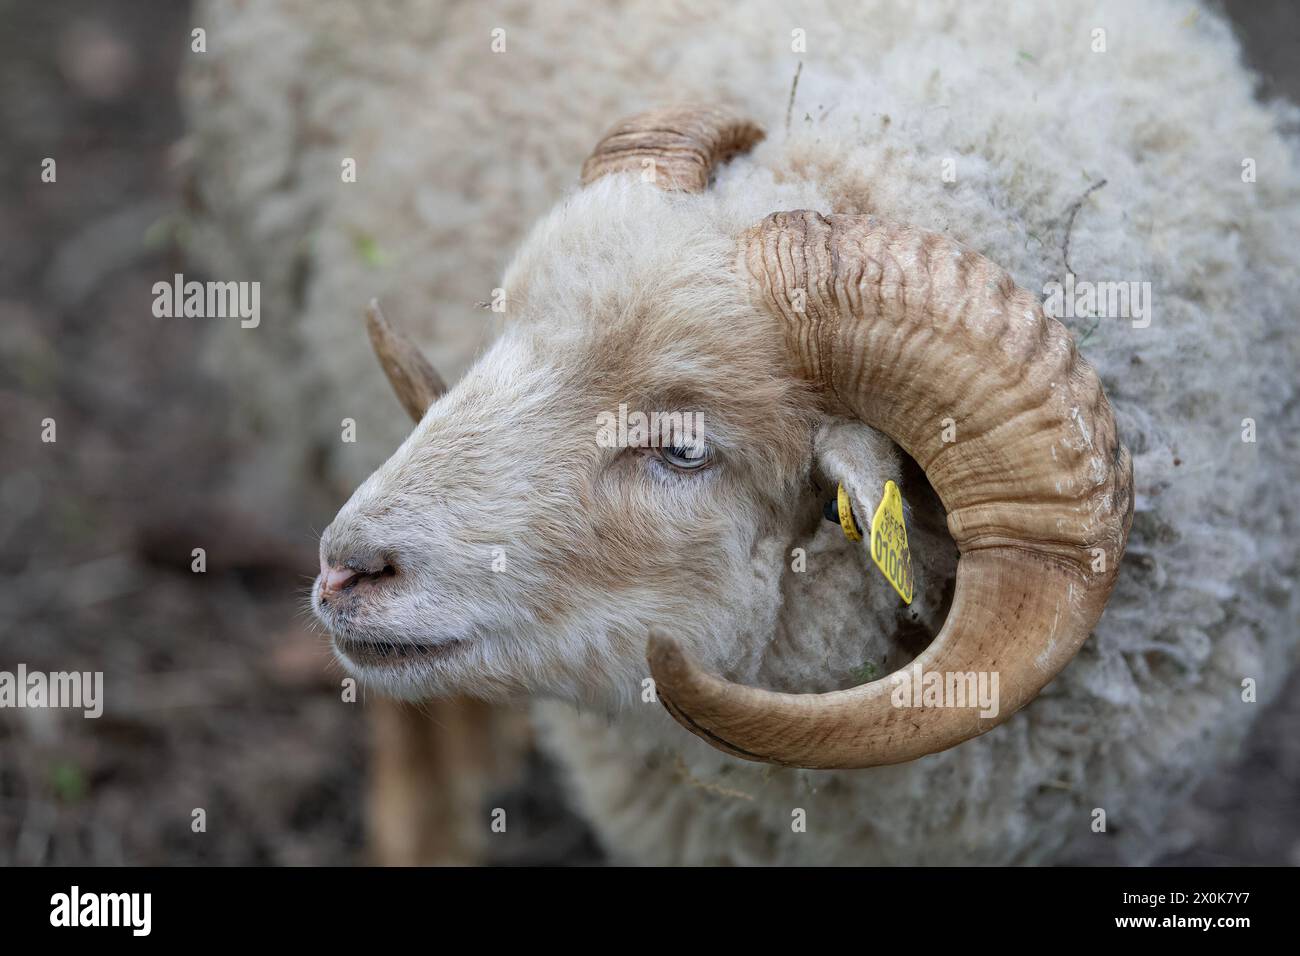 Nancy, France - Focus sur la tête de mouton Ouessant dans un parc public de Nancy. Banque D'Images